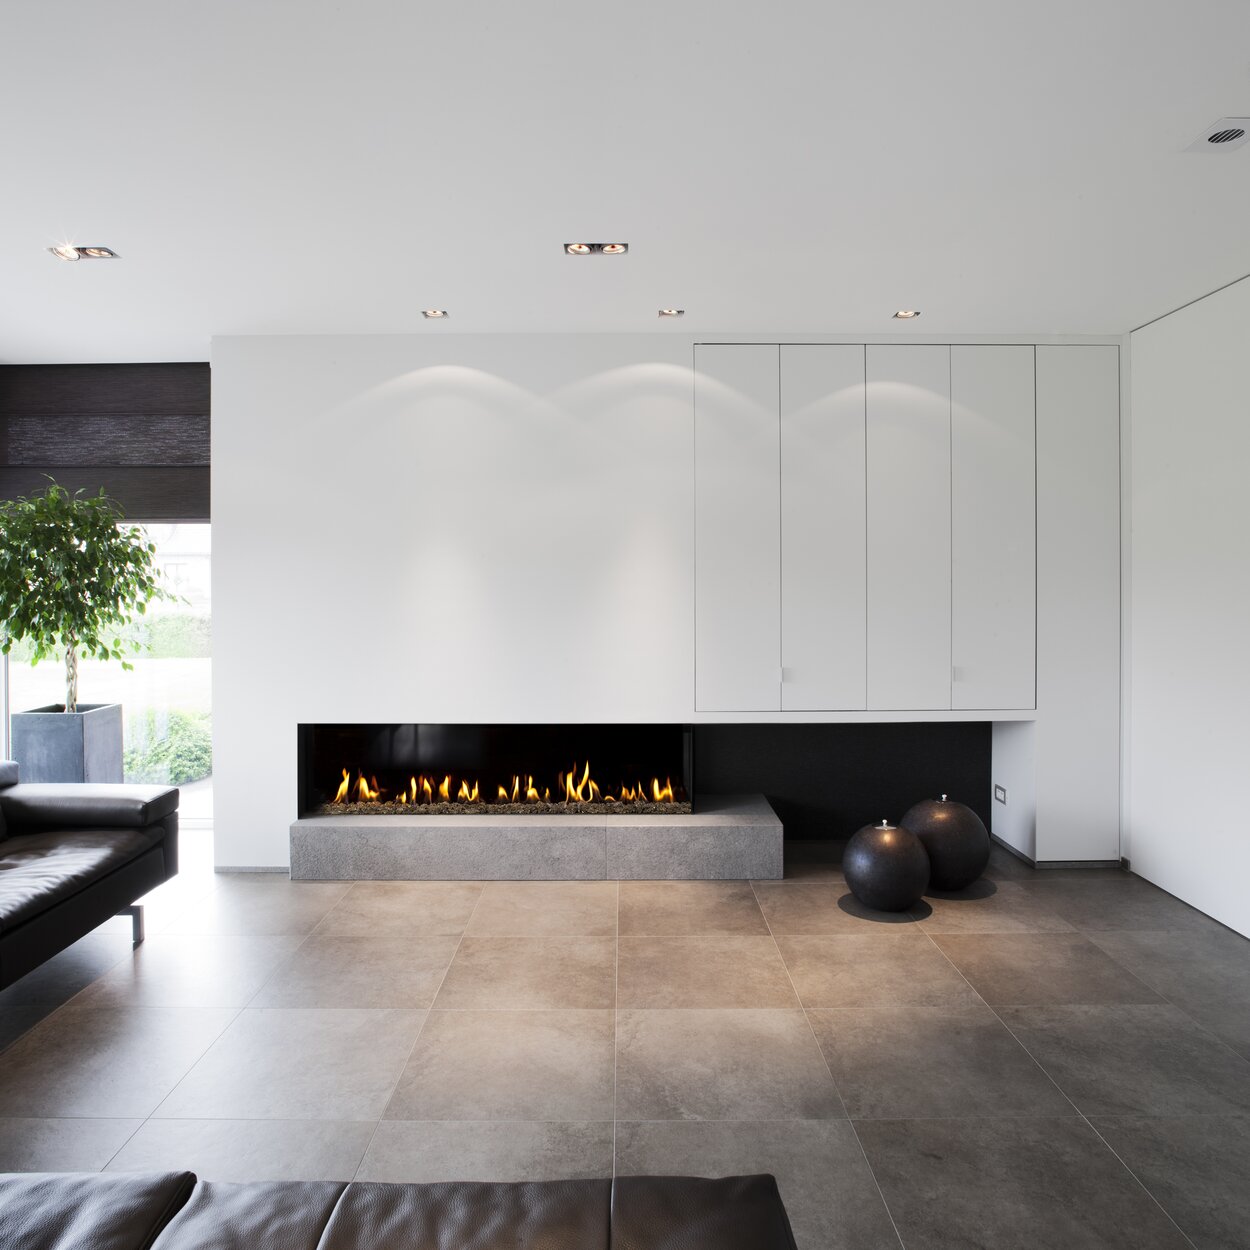 Zweiseitig verglaster Gas-Kamin G165/37C auf Betonsockel mit weisser Kaminverkleidung im modernen Wohnzimmer mit Steinboden